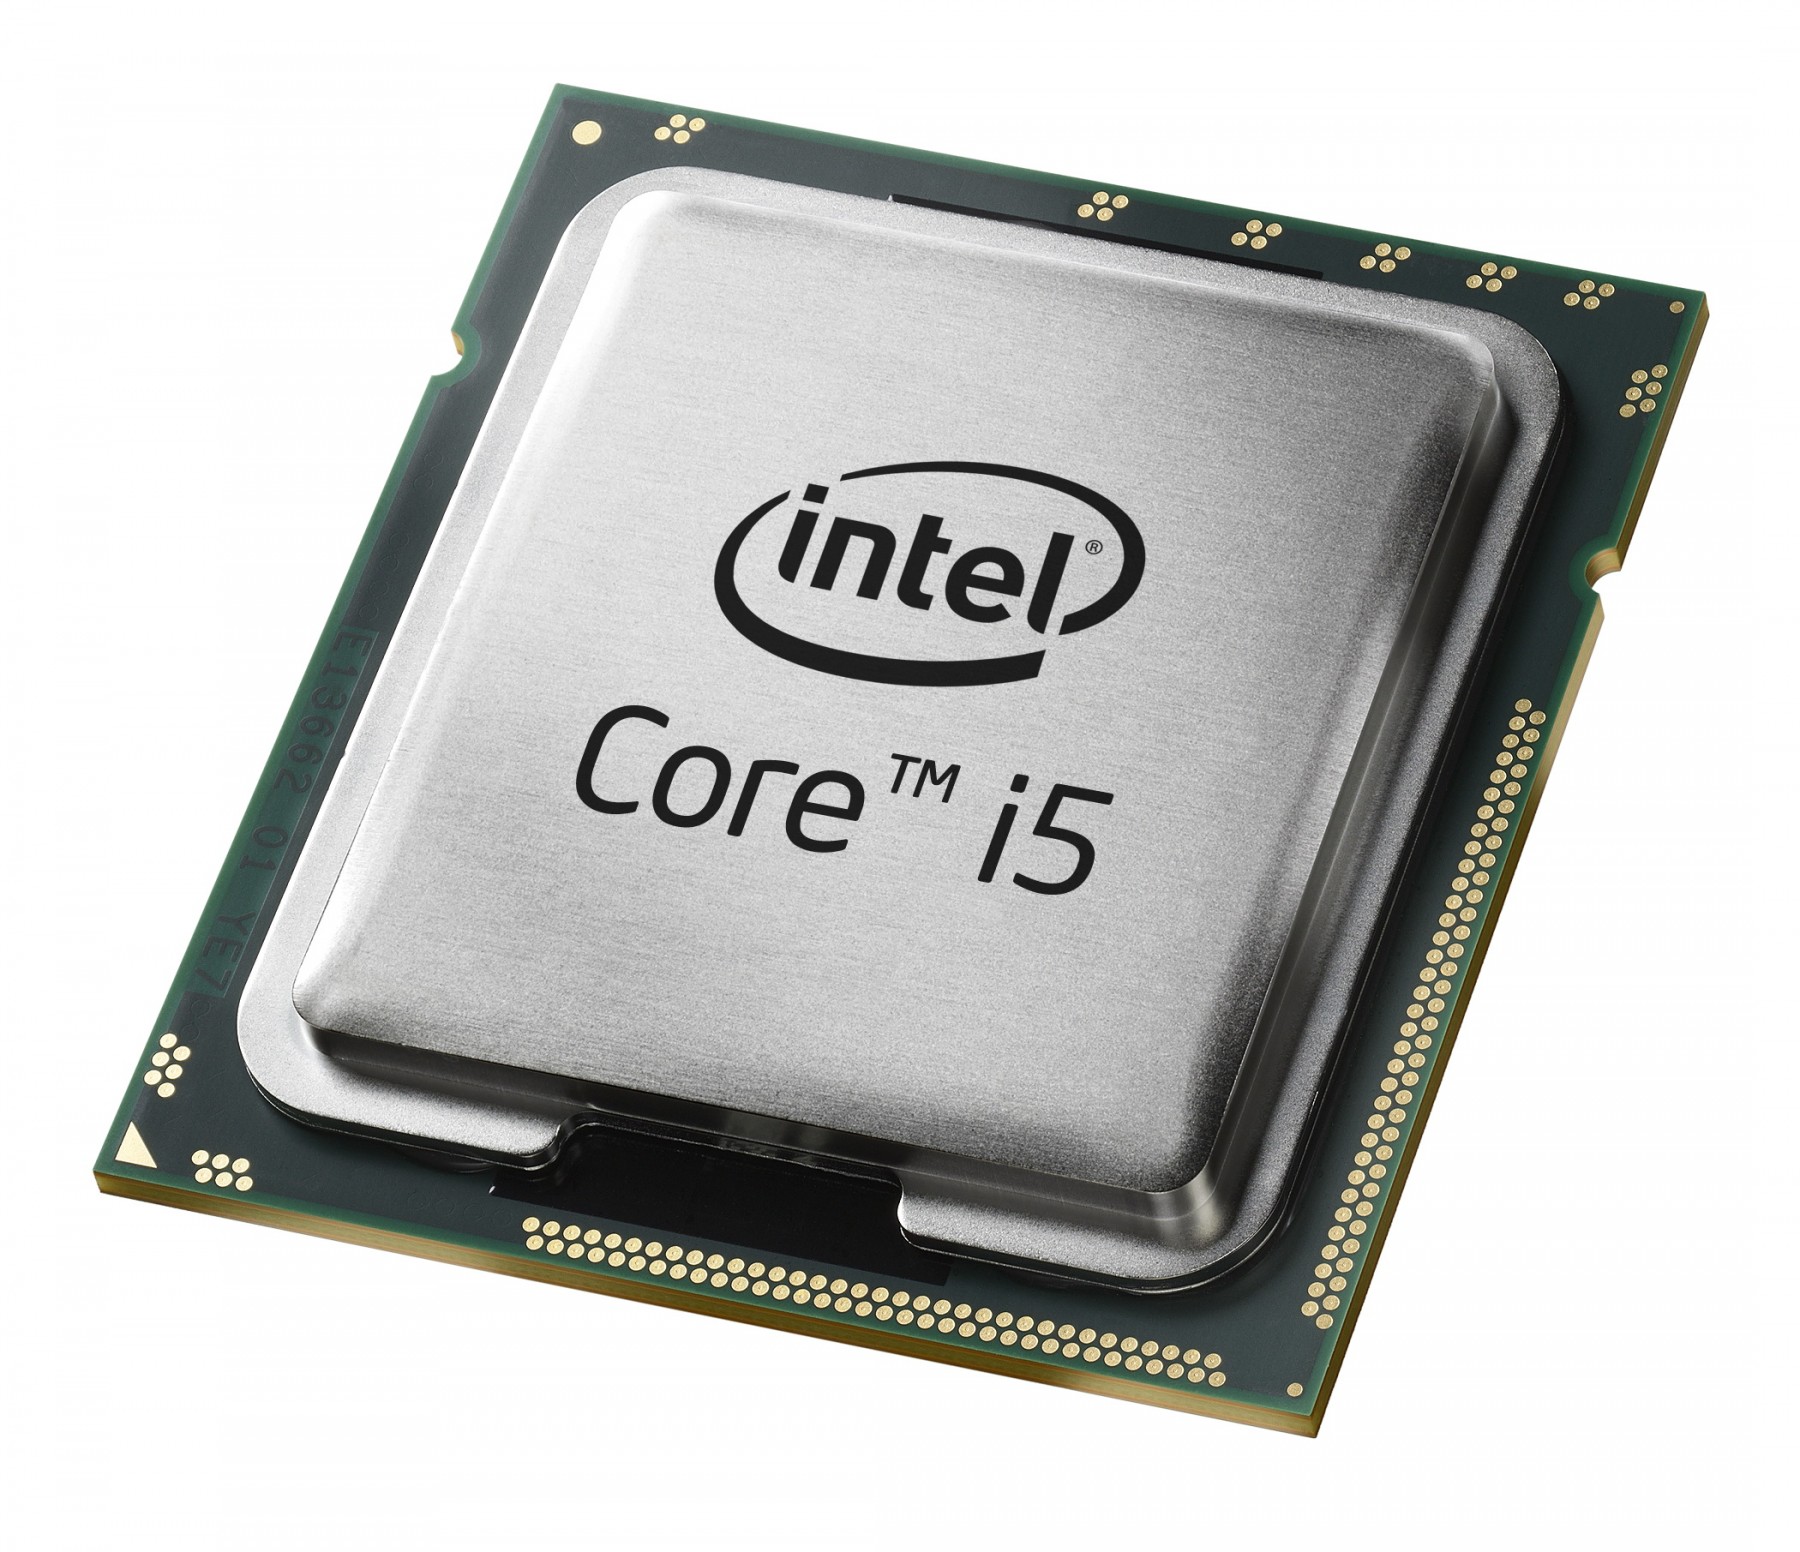 500030076-Intel Core i5-4570T SR1CA 2.9Ghz 5GT/s LGA 1150 Processor-image